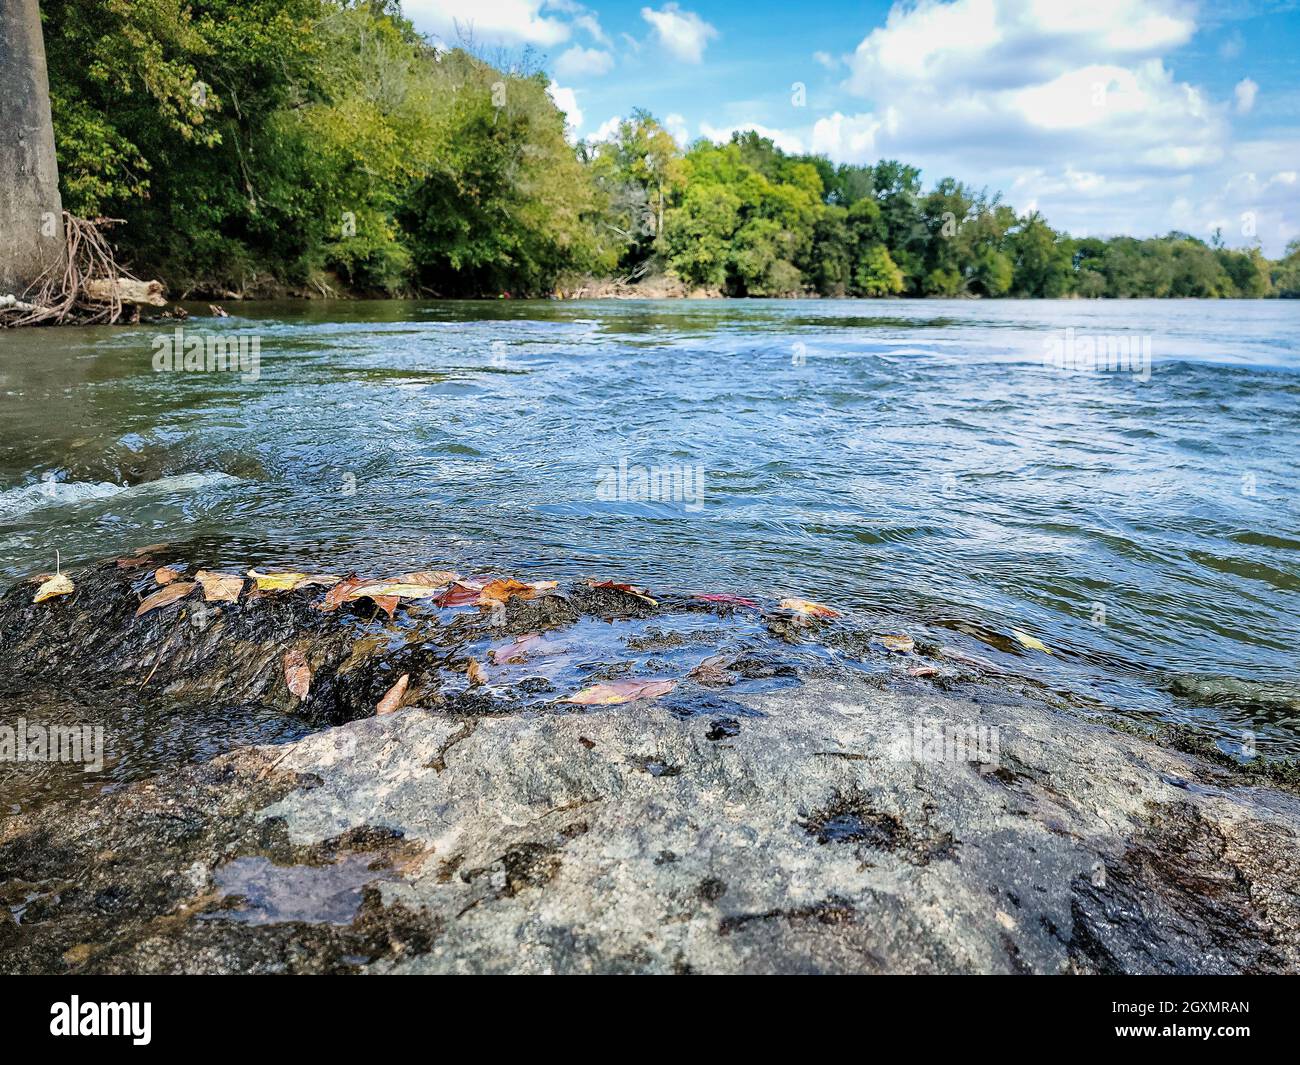 Tranquil Scene on River in North Carolina. Stock Photo